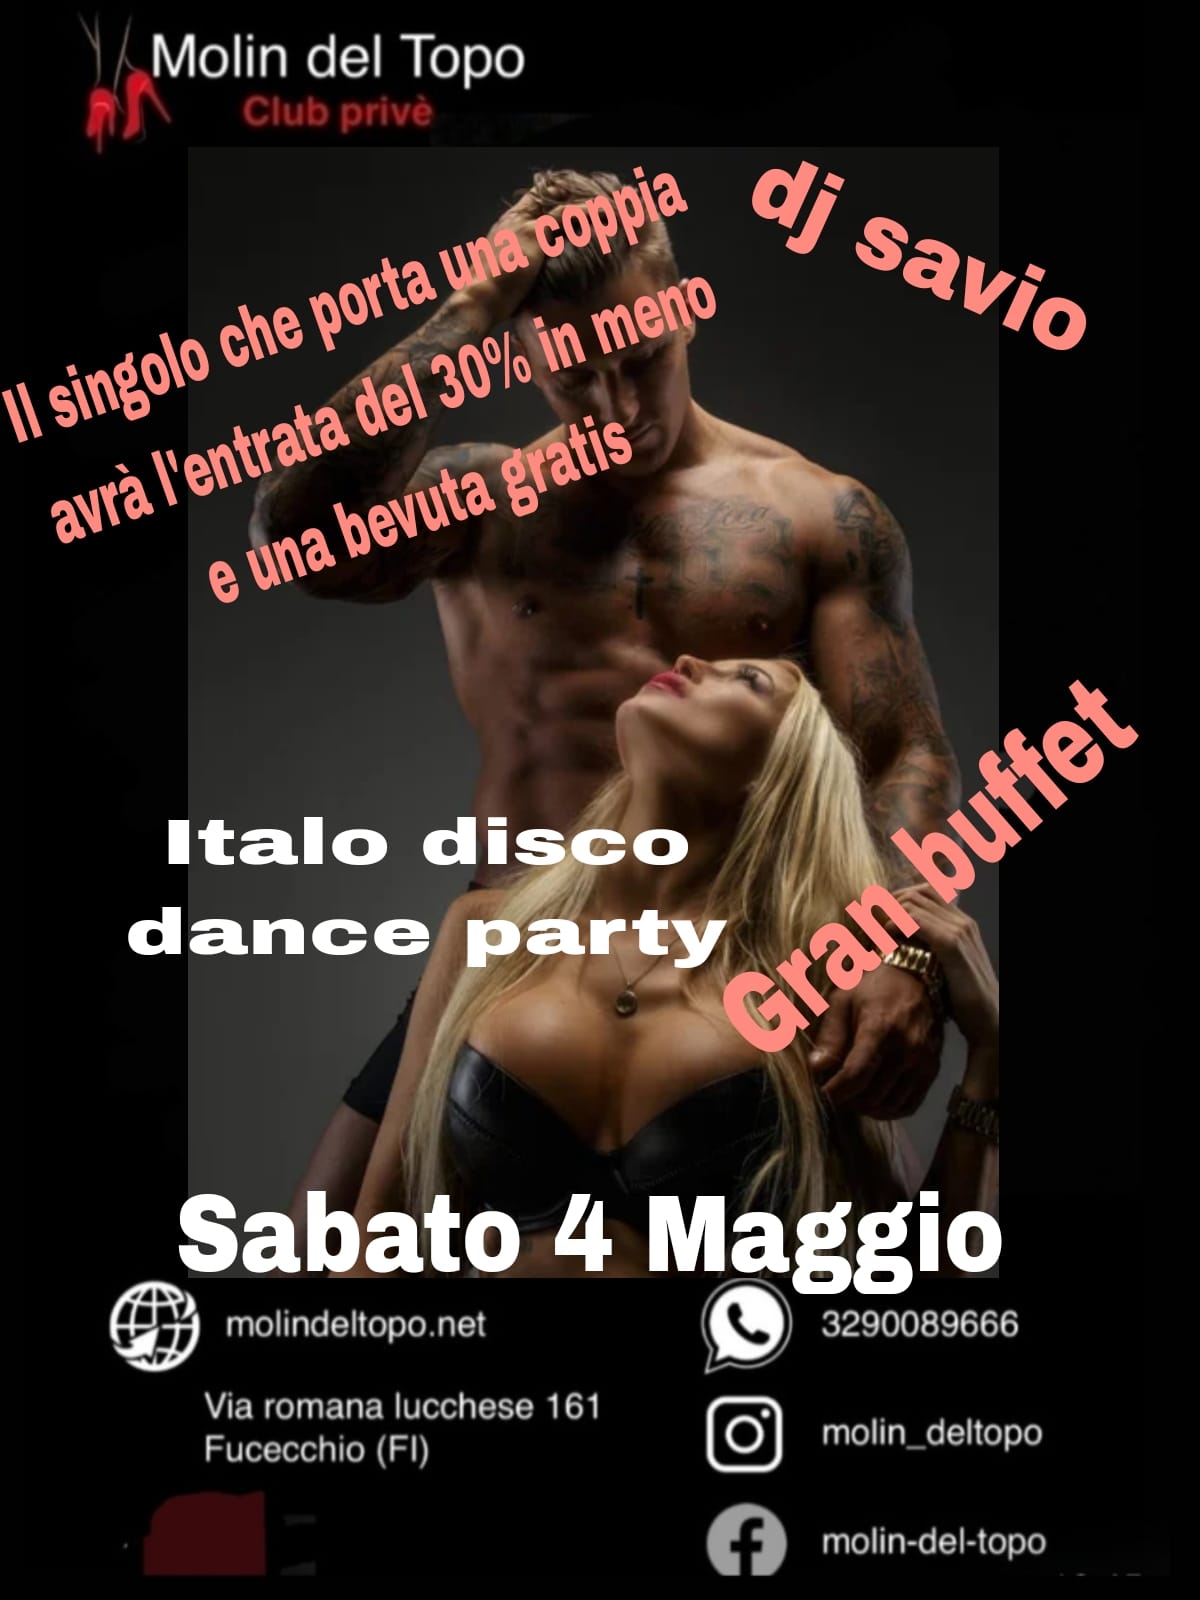 Sabato 4 Maggio – Grand buffet – Italo disco dance party –